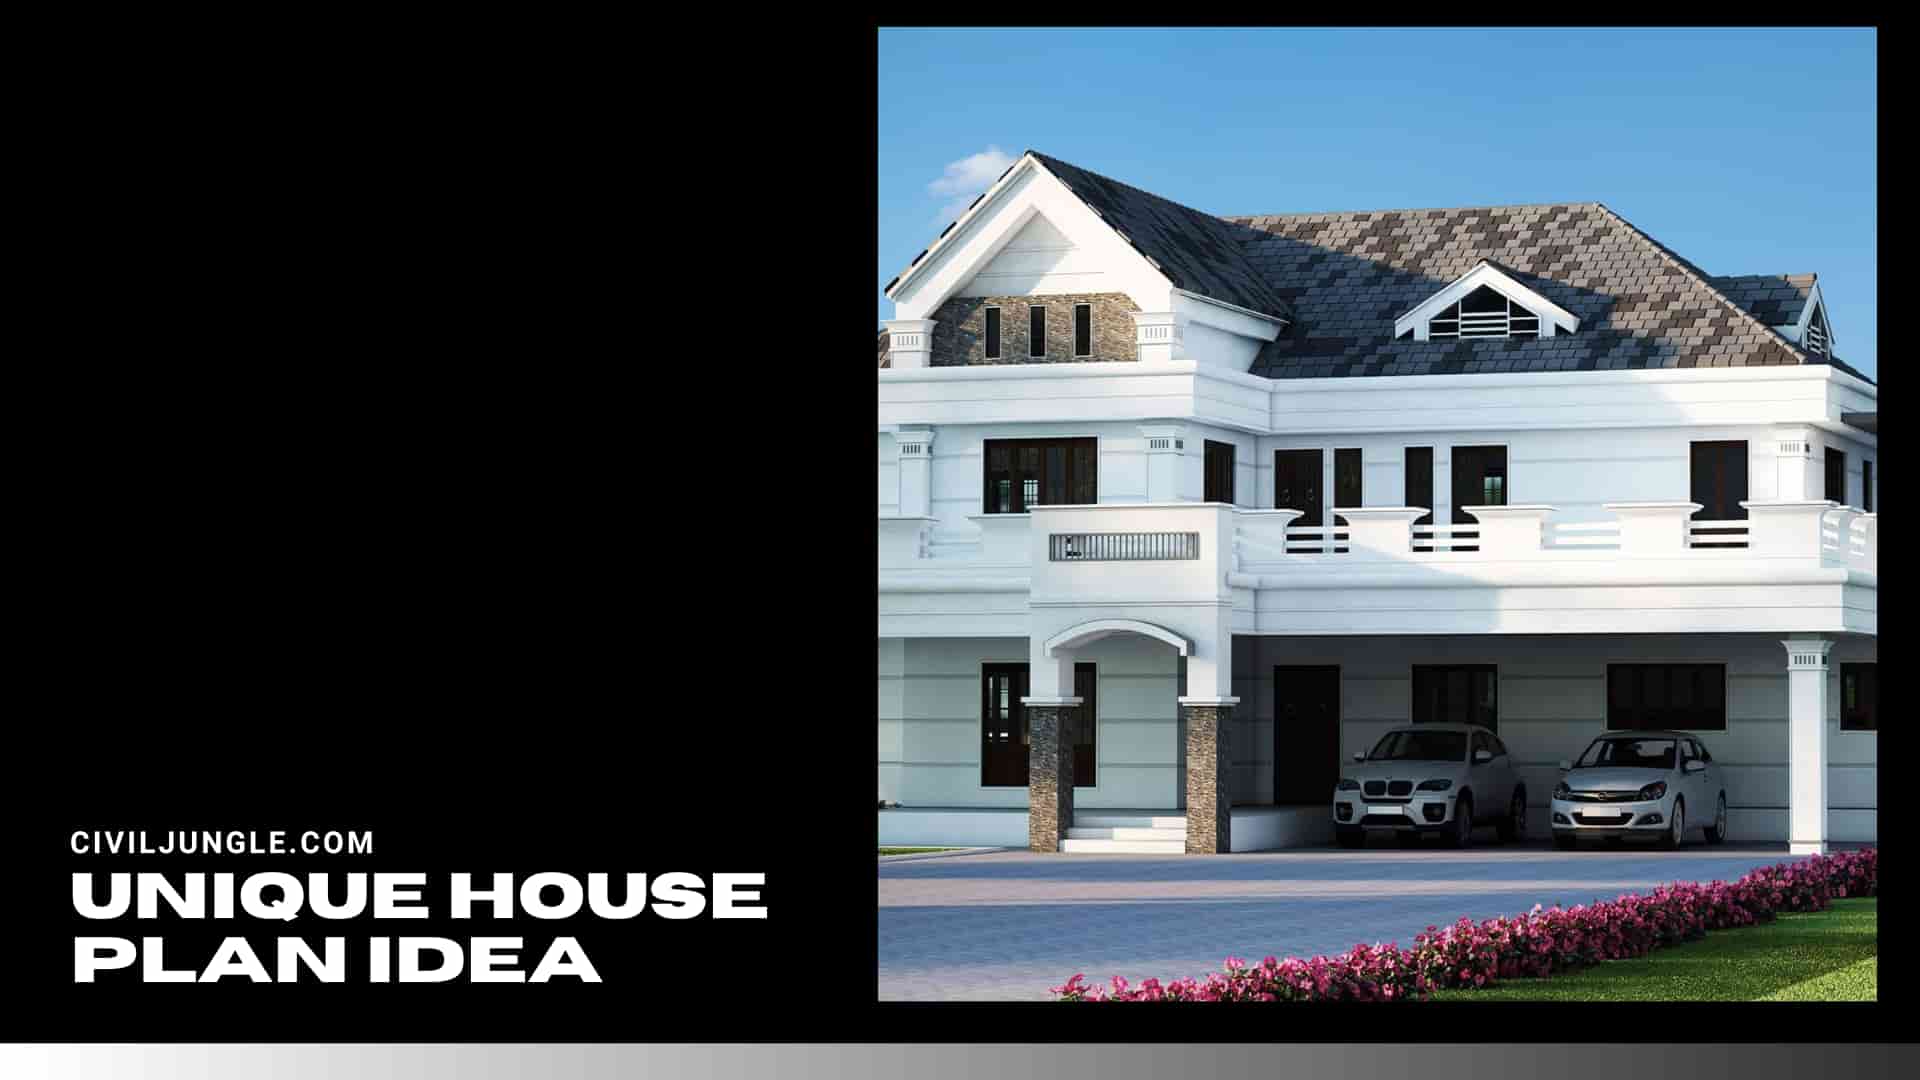 Unique House Plan Idea